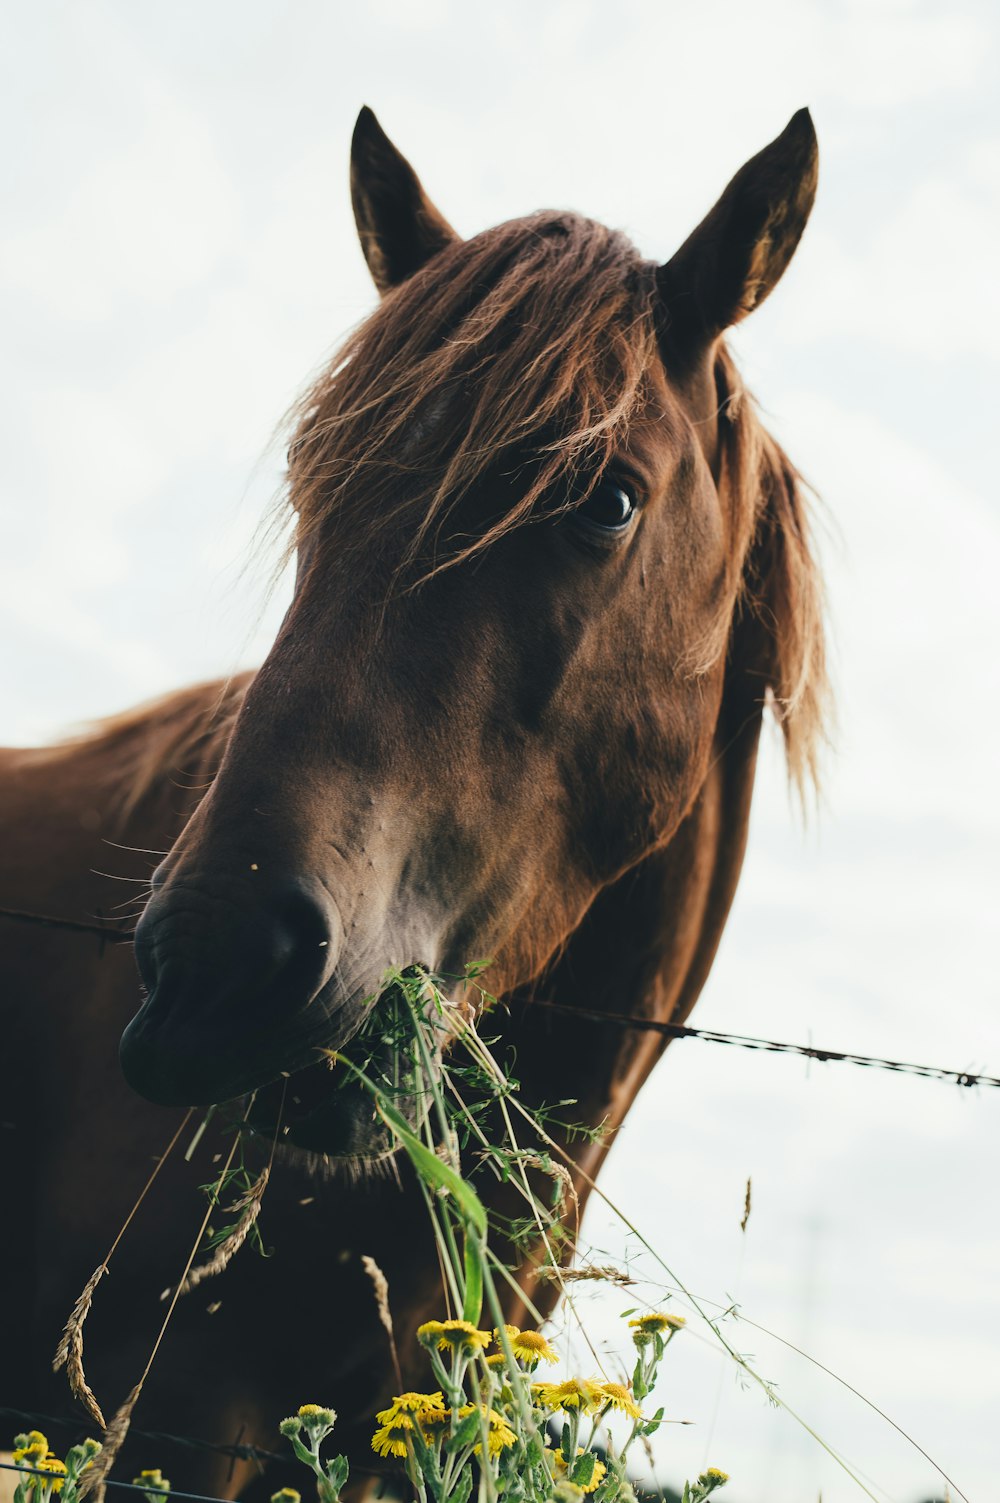 cavallo marrone che mangia l'erba durante il cielo nuvoloso